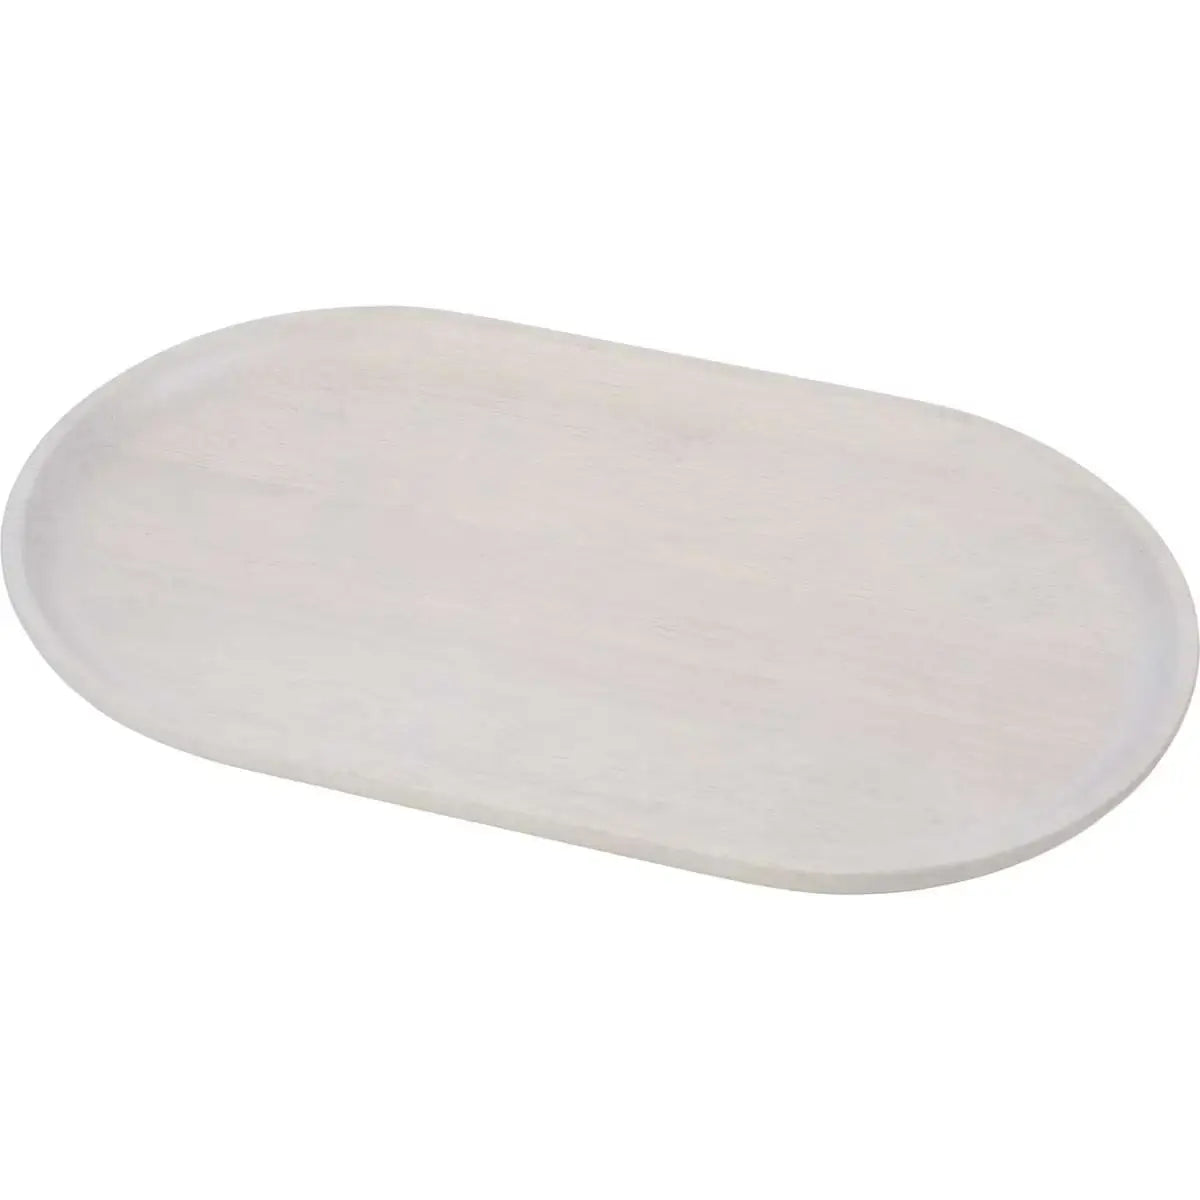 White Wash Rectangular Platter - Davis & Waddell